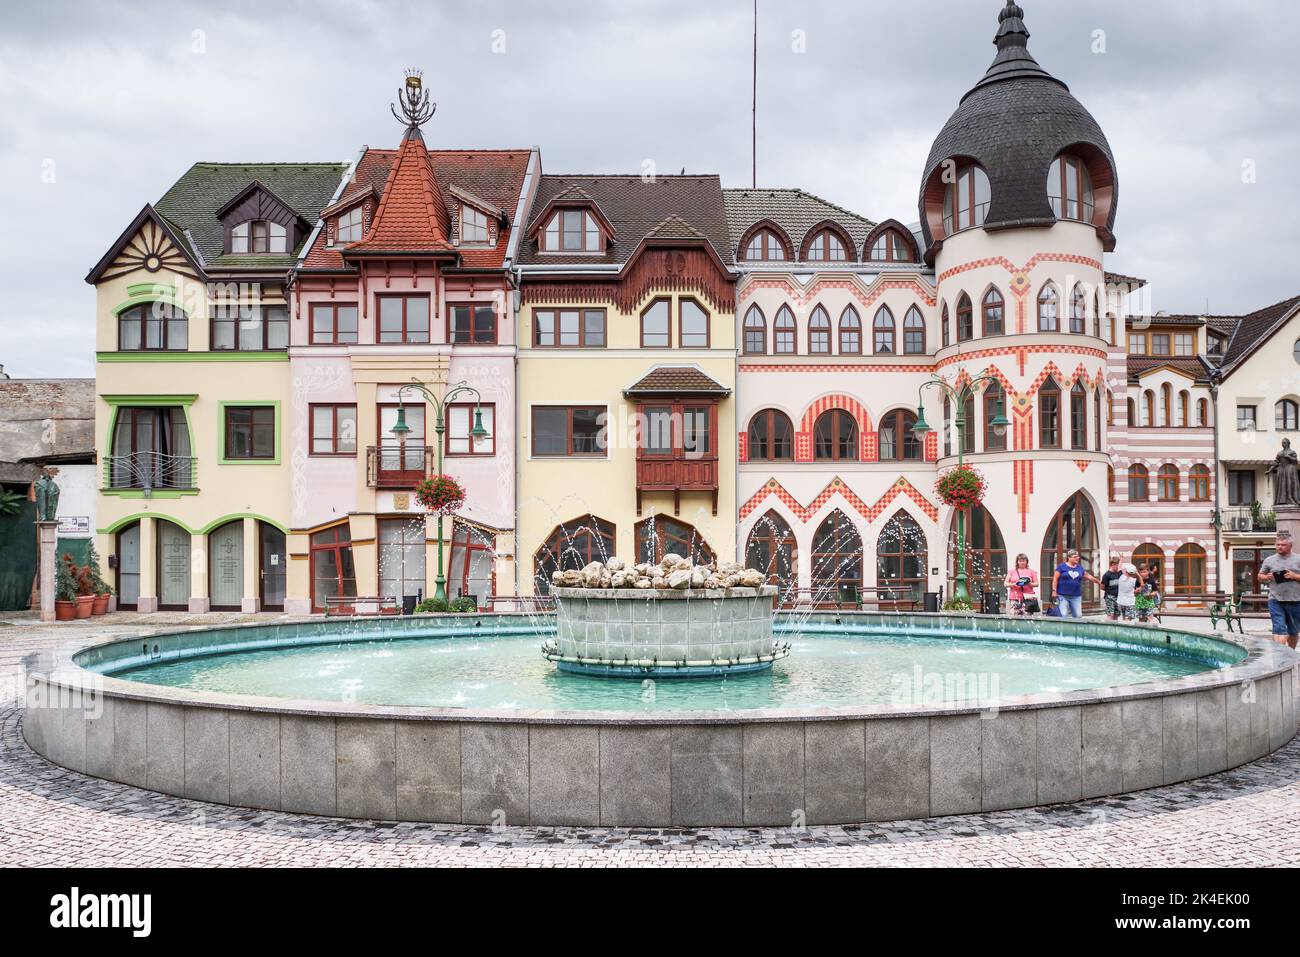 Place de l'Europe à Komarno, Slovaquie - ouvert en 2000, chaque bâtiment autour de la place représente l'architecture d'un pays européen Banque D'Images